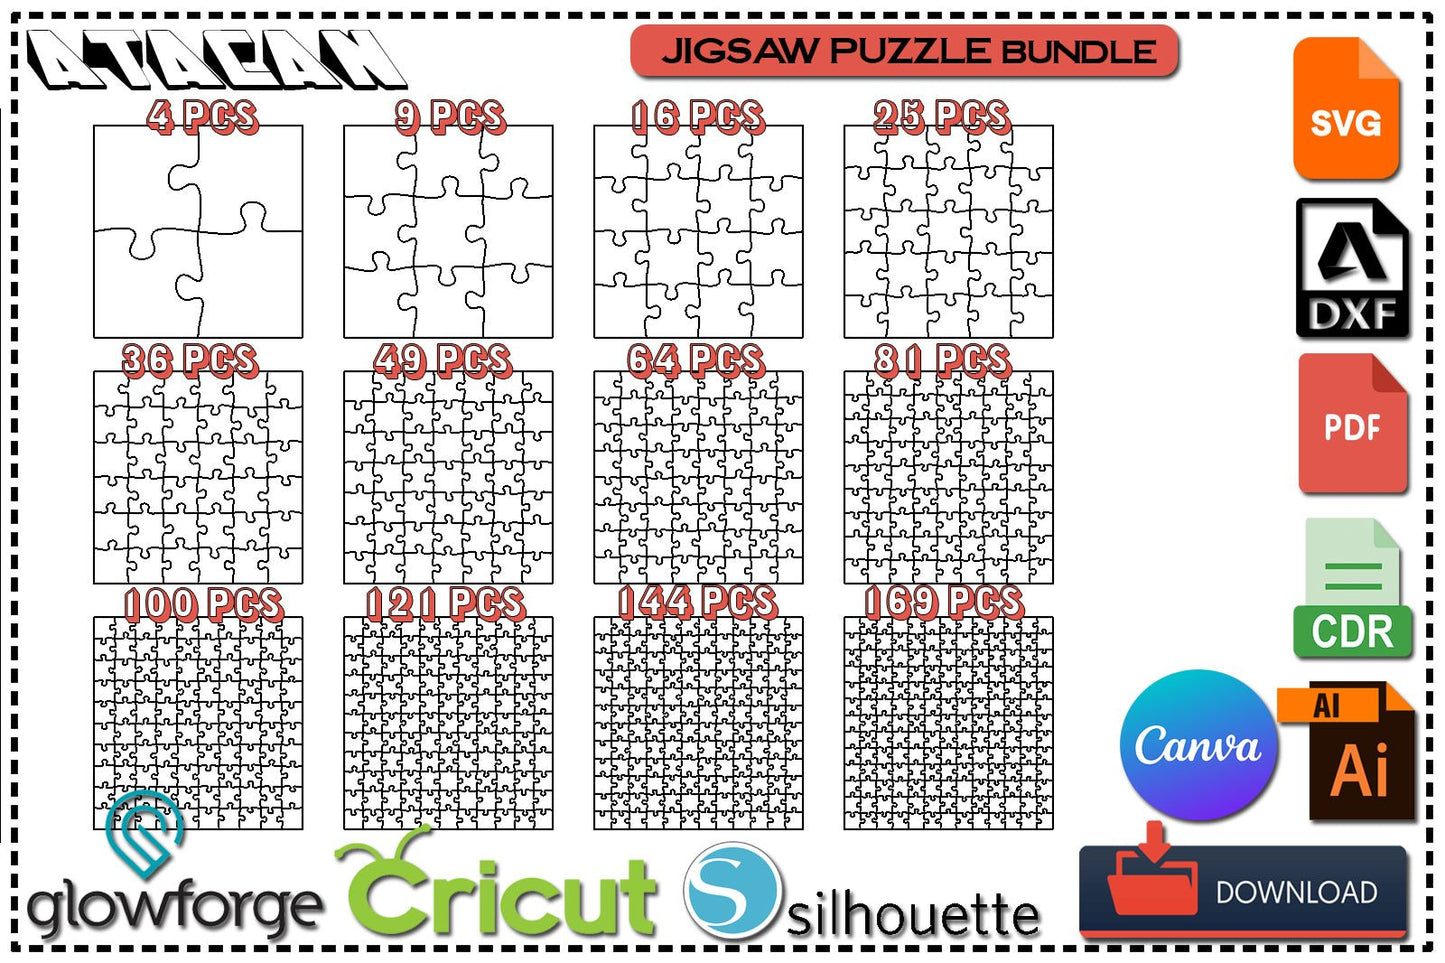 Laser Cut File Puzzle set / Puzzle Jigsaws / Jigsaw Pieces / Glowforge Cricut Puzzles SVG DXF Ai CDR 377